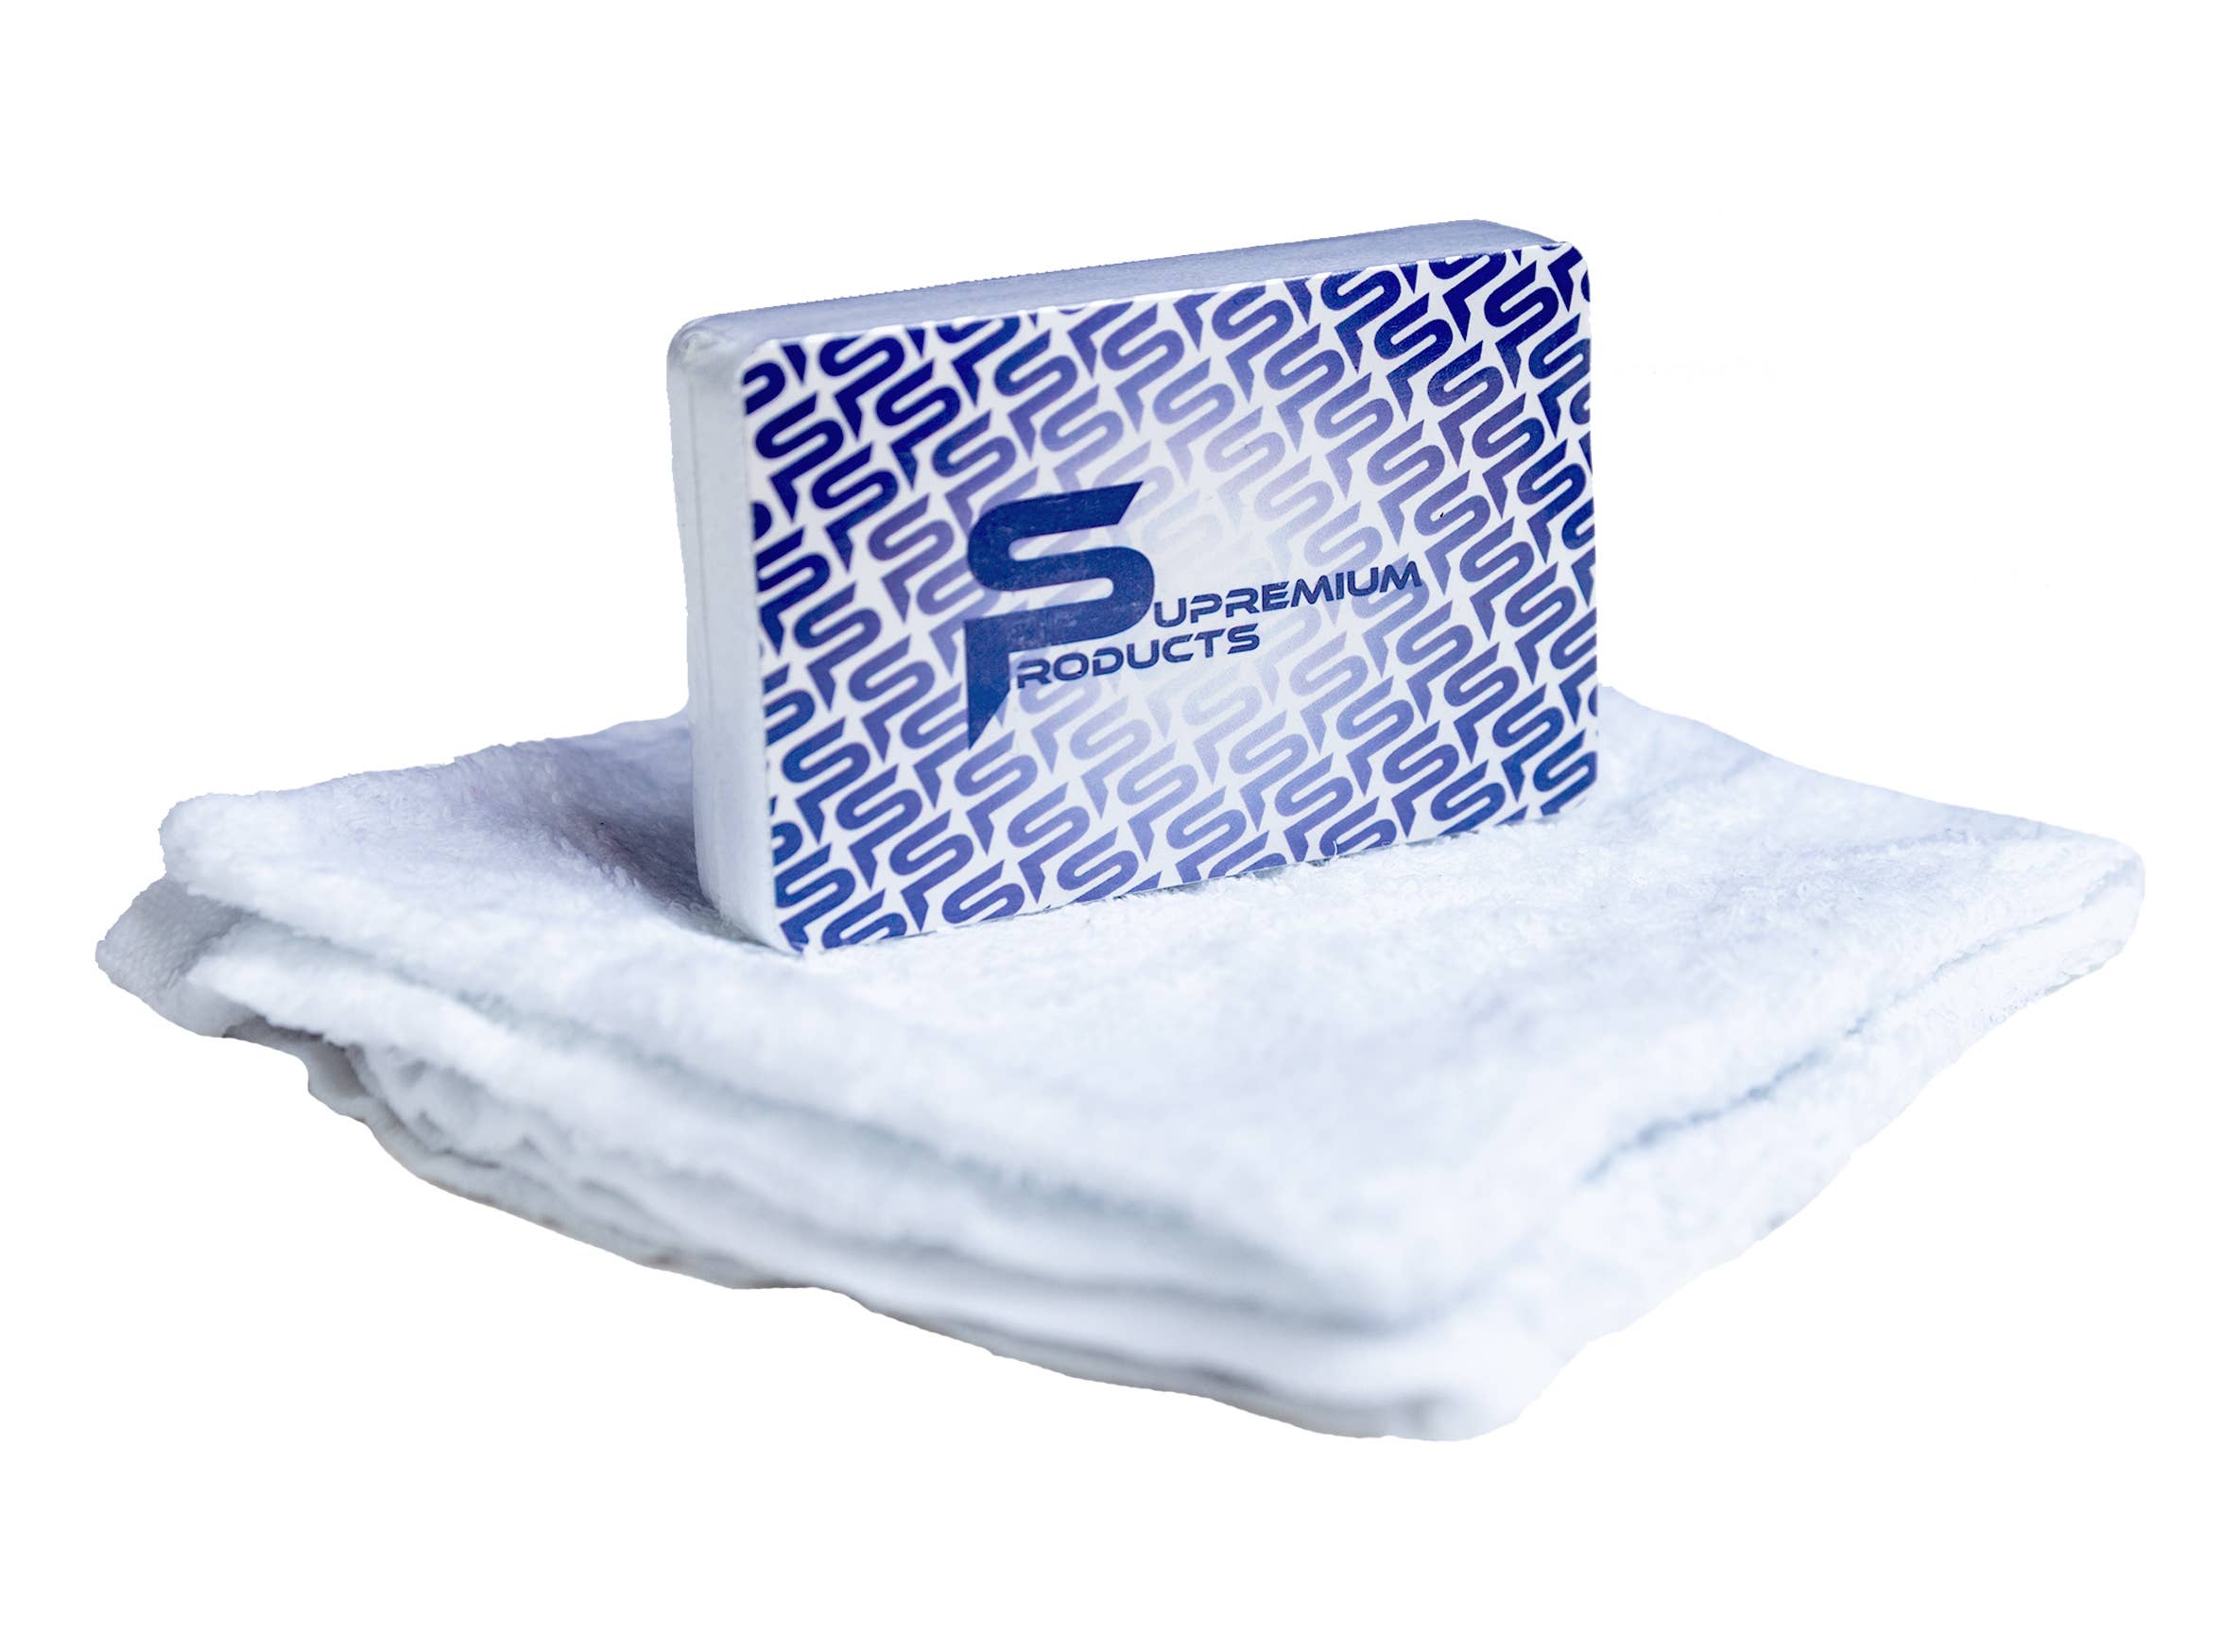 Superior Juego de toallas de mano de algodón de 8 piezas, toallas pequeñas  para secado rápido, artículos esenciales para el hogar, decoración de baño